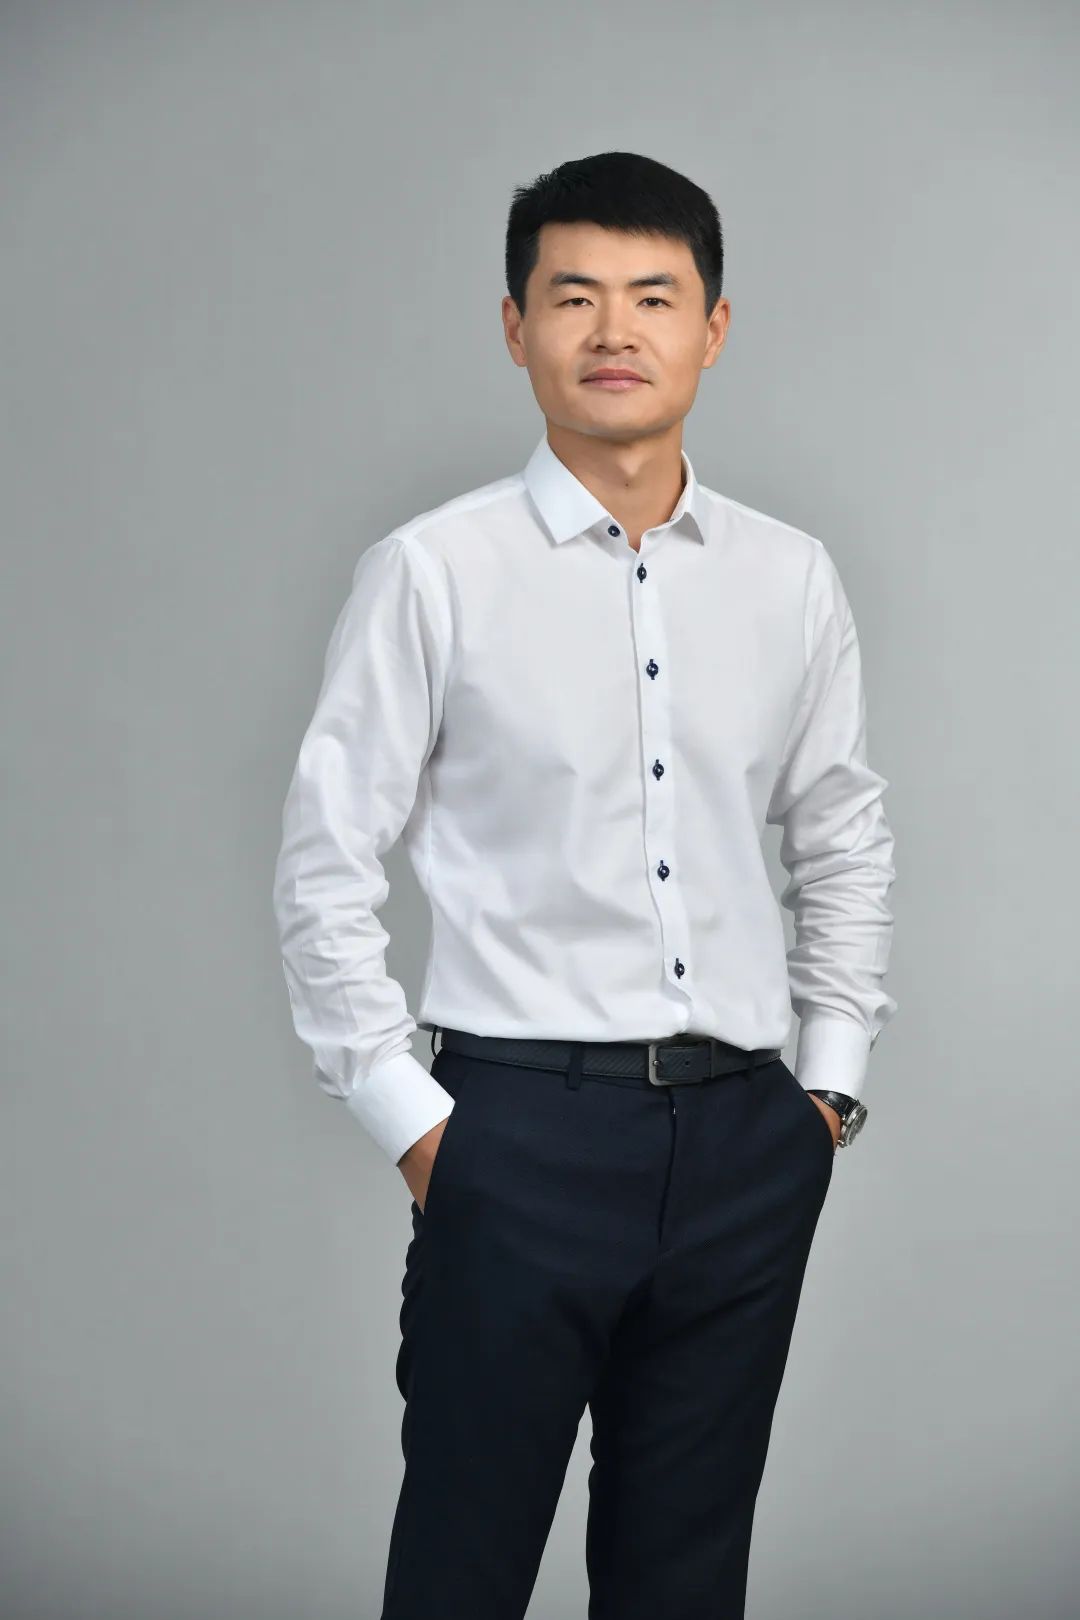 第十七屆杭州市優秀企業家——象限科技總經理孫明